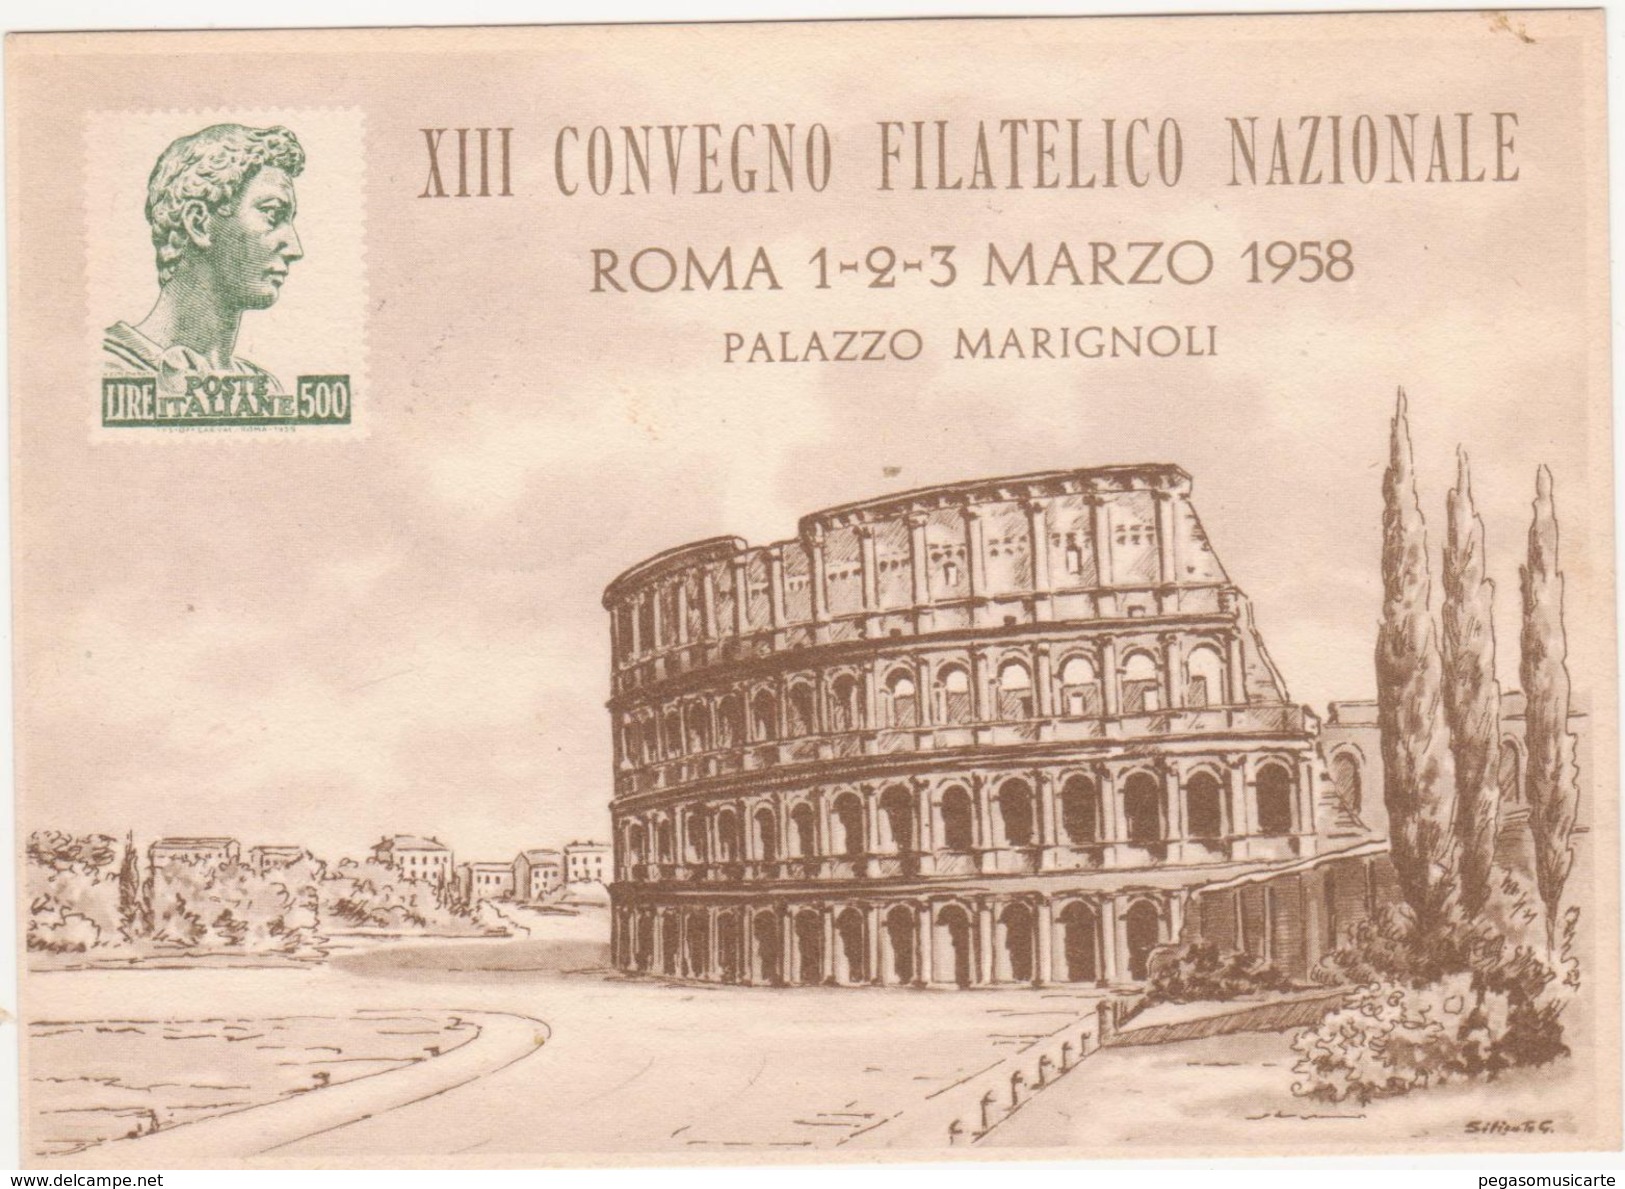 324 - XIII CONVEGNO FILATELICO NAZIONALE ROMA 1958 PALAZZO MARIGNOLI - Borse E Saloni Del Collezionismo